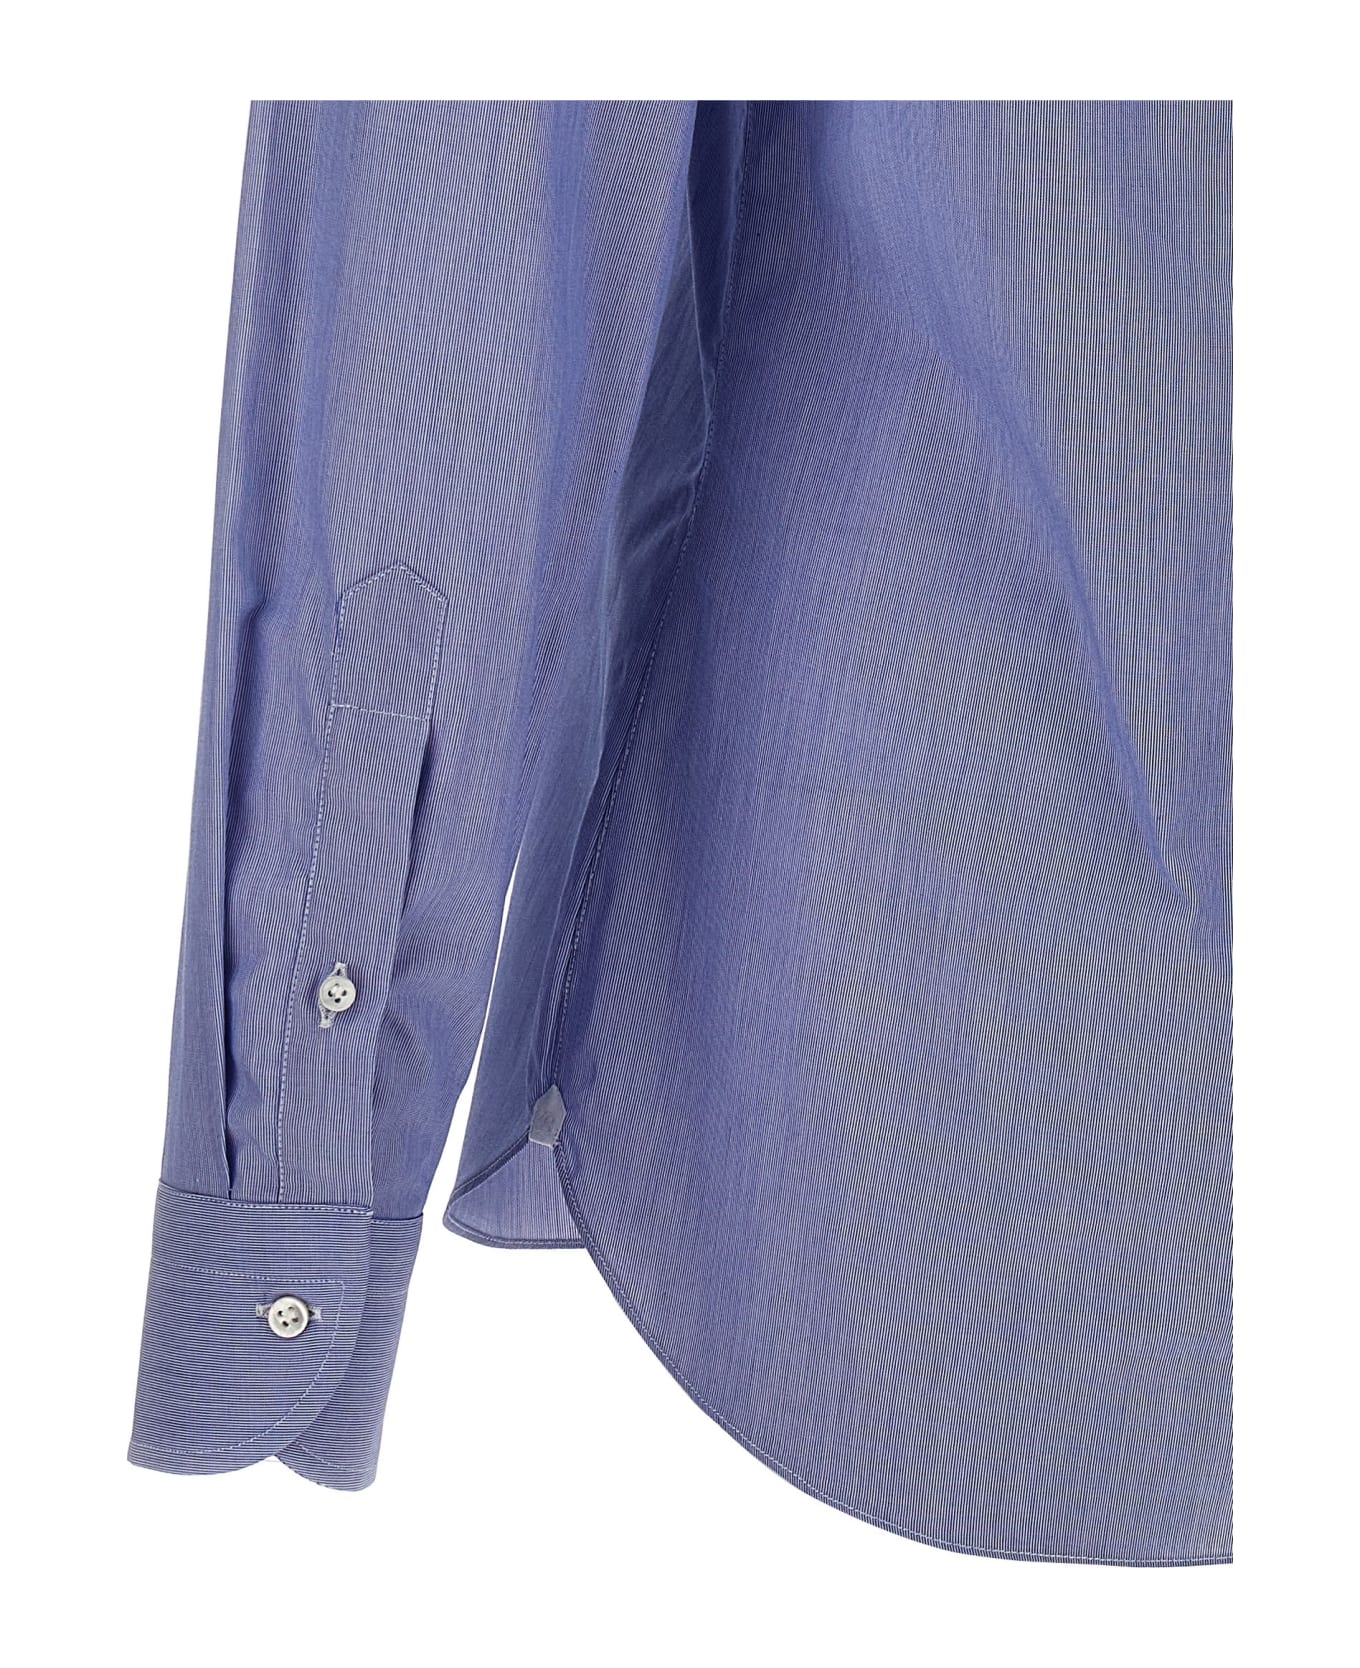 Borriello Napoli 'falso Unito' Cotton Shirt - Light Blue